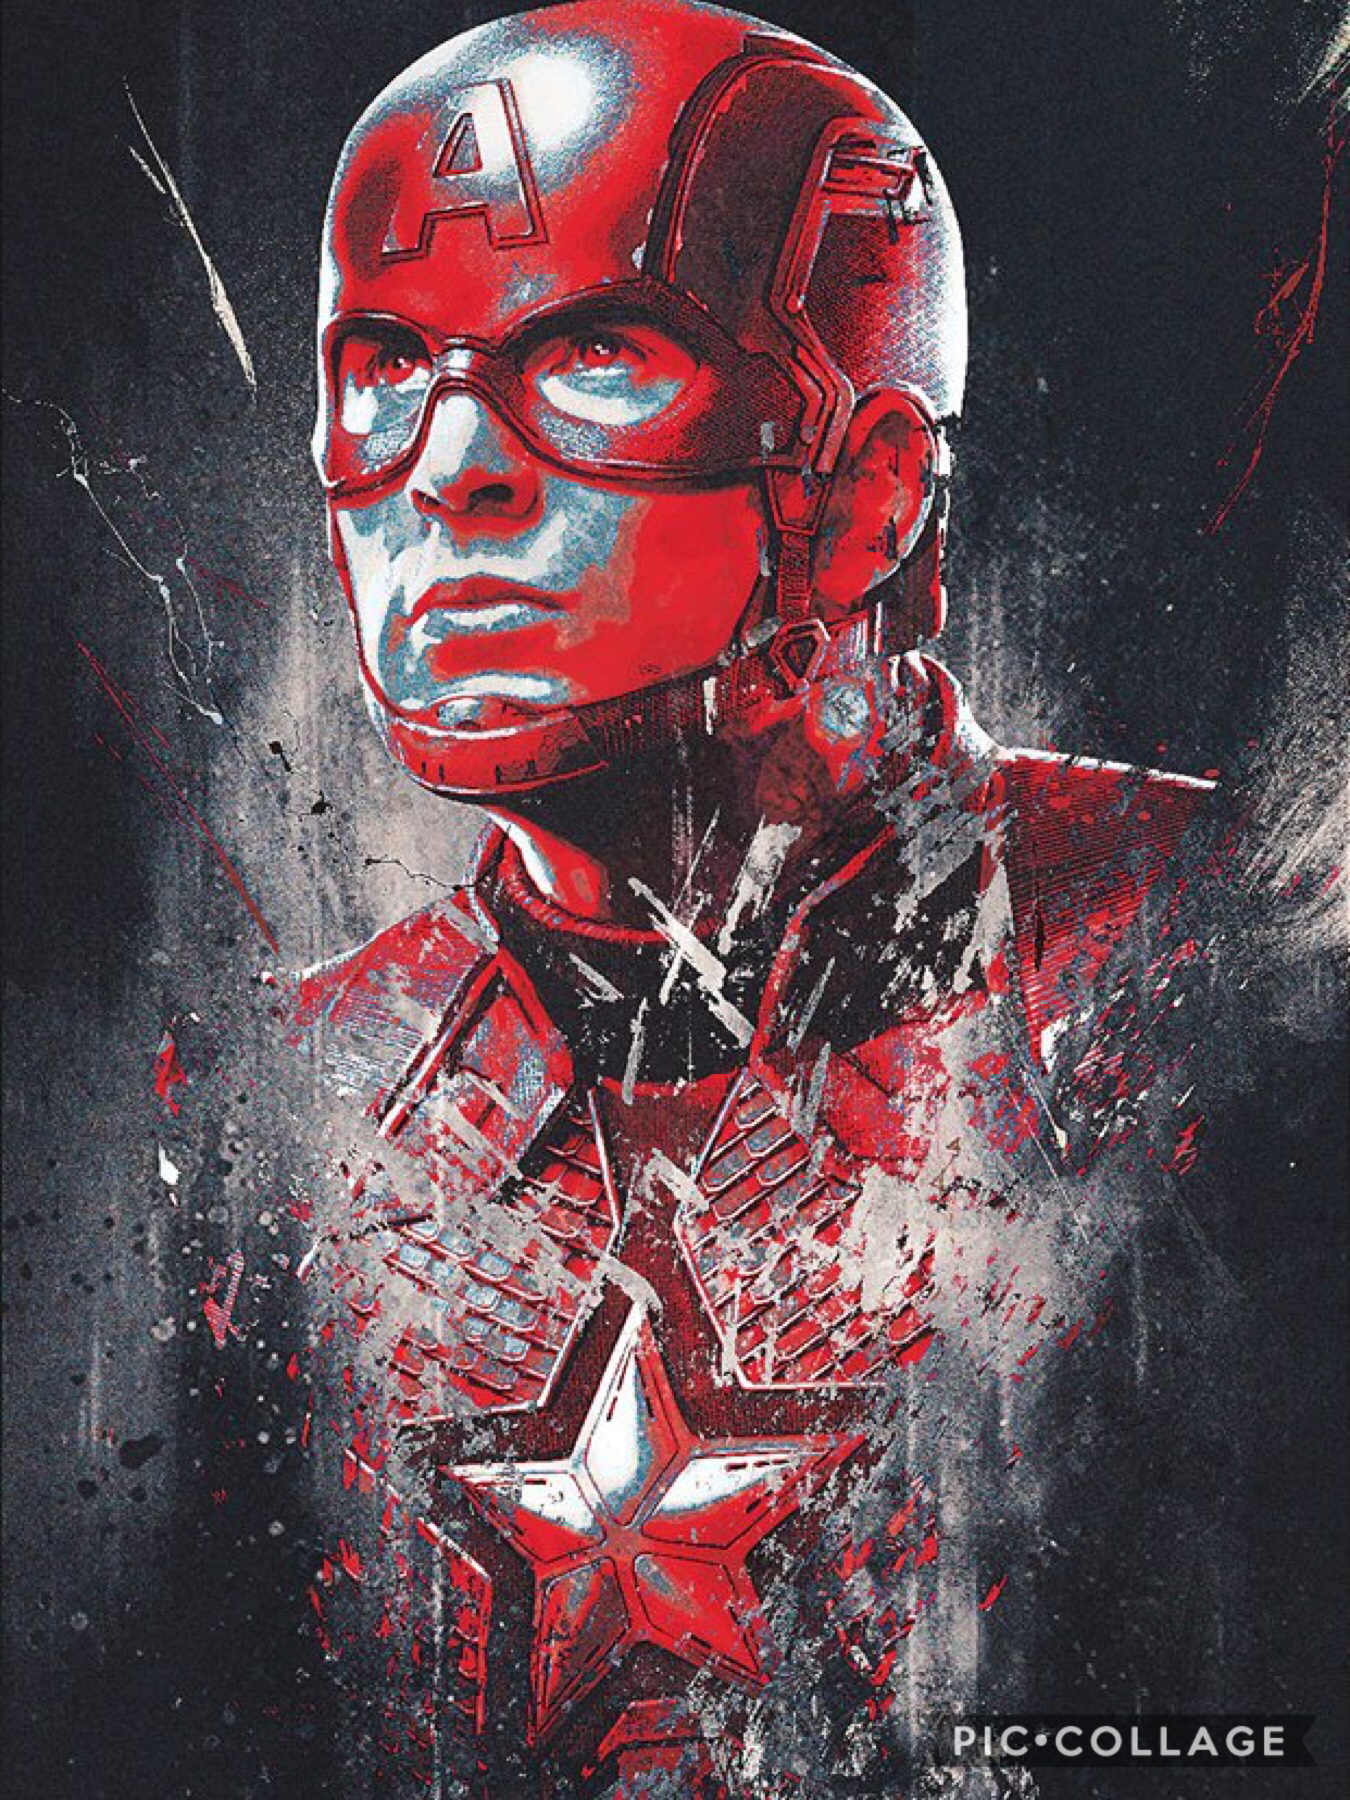 @Avengers #EndGame #CaptainAmerica in 2019 by Marvel Studios